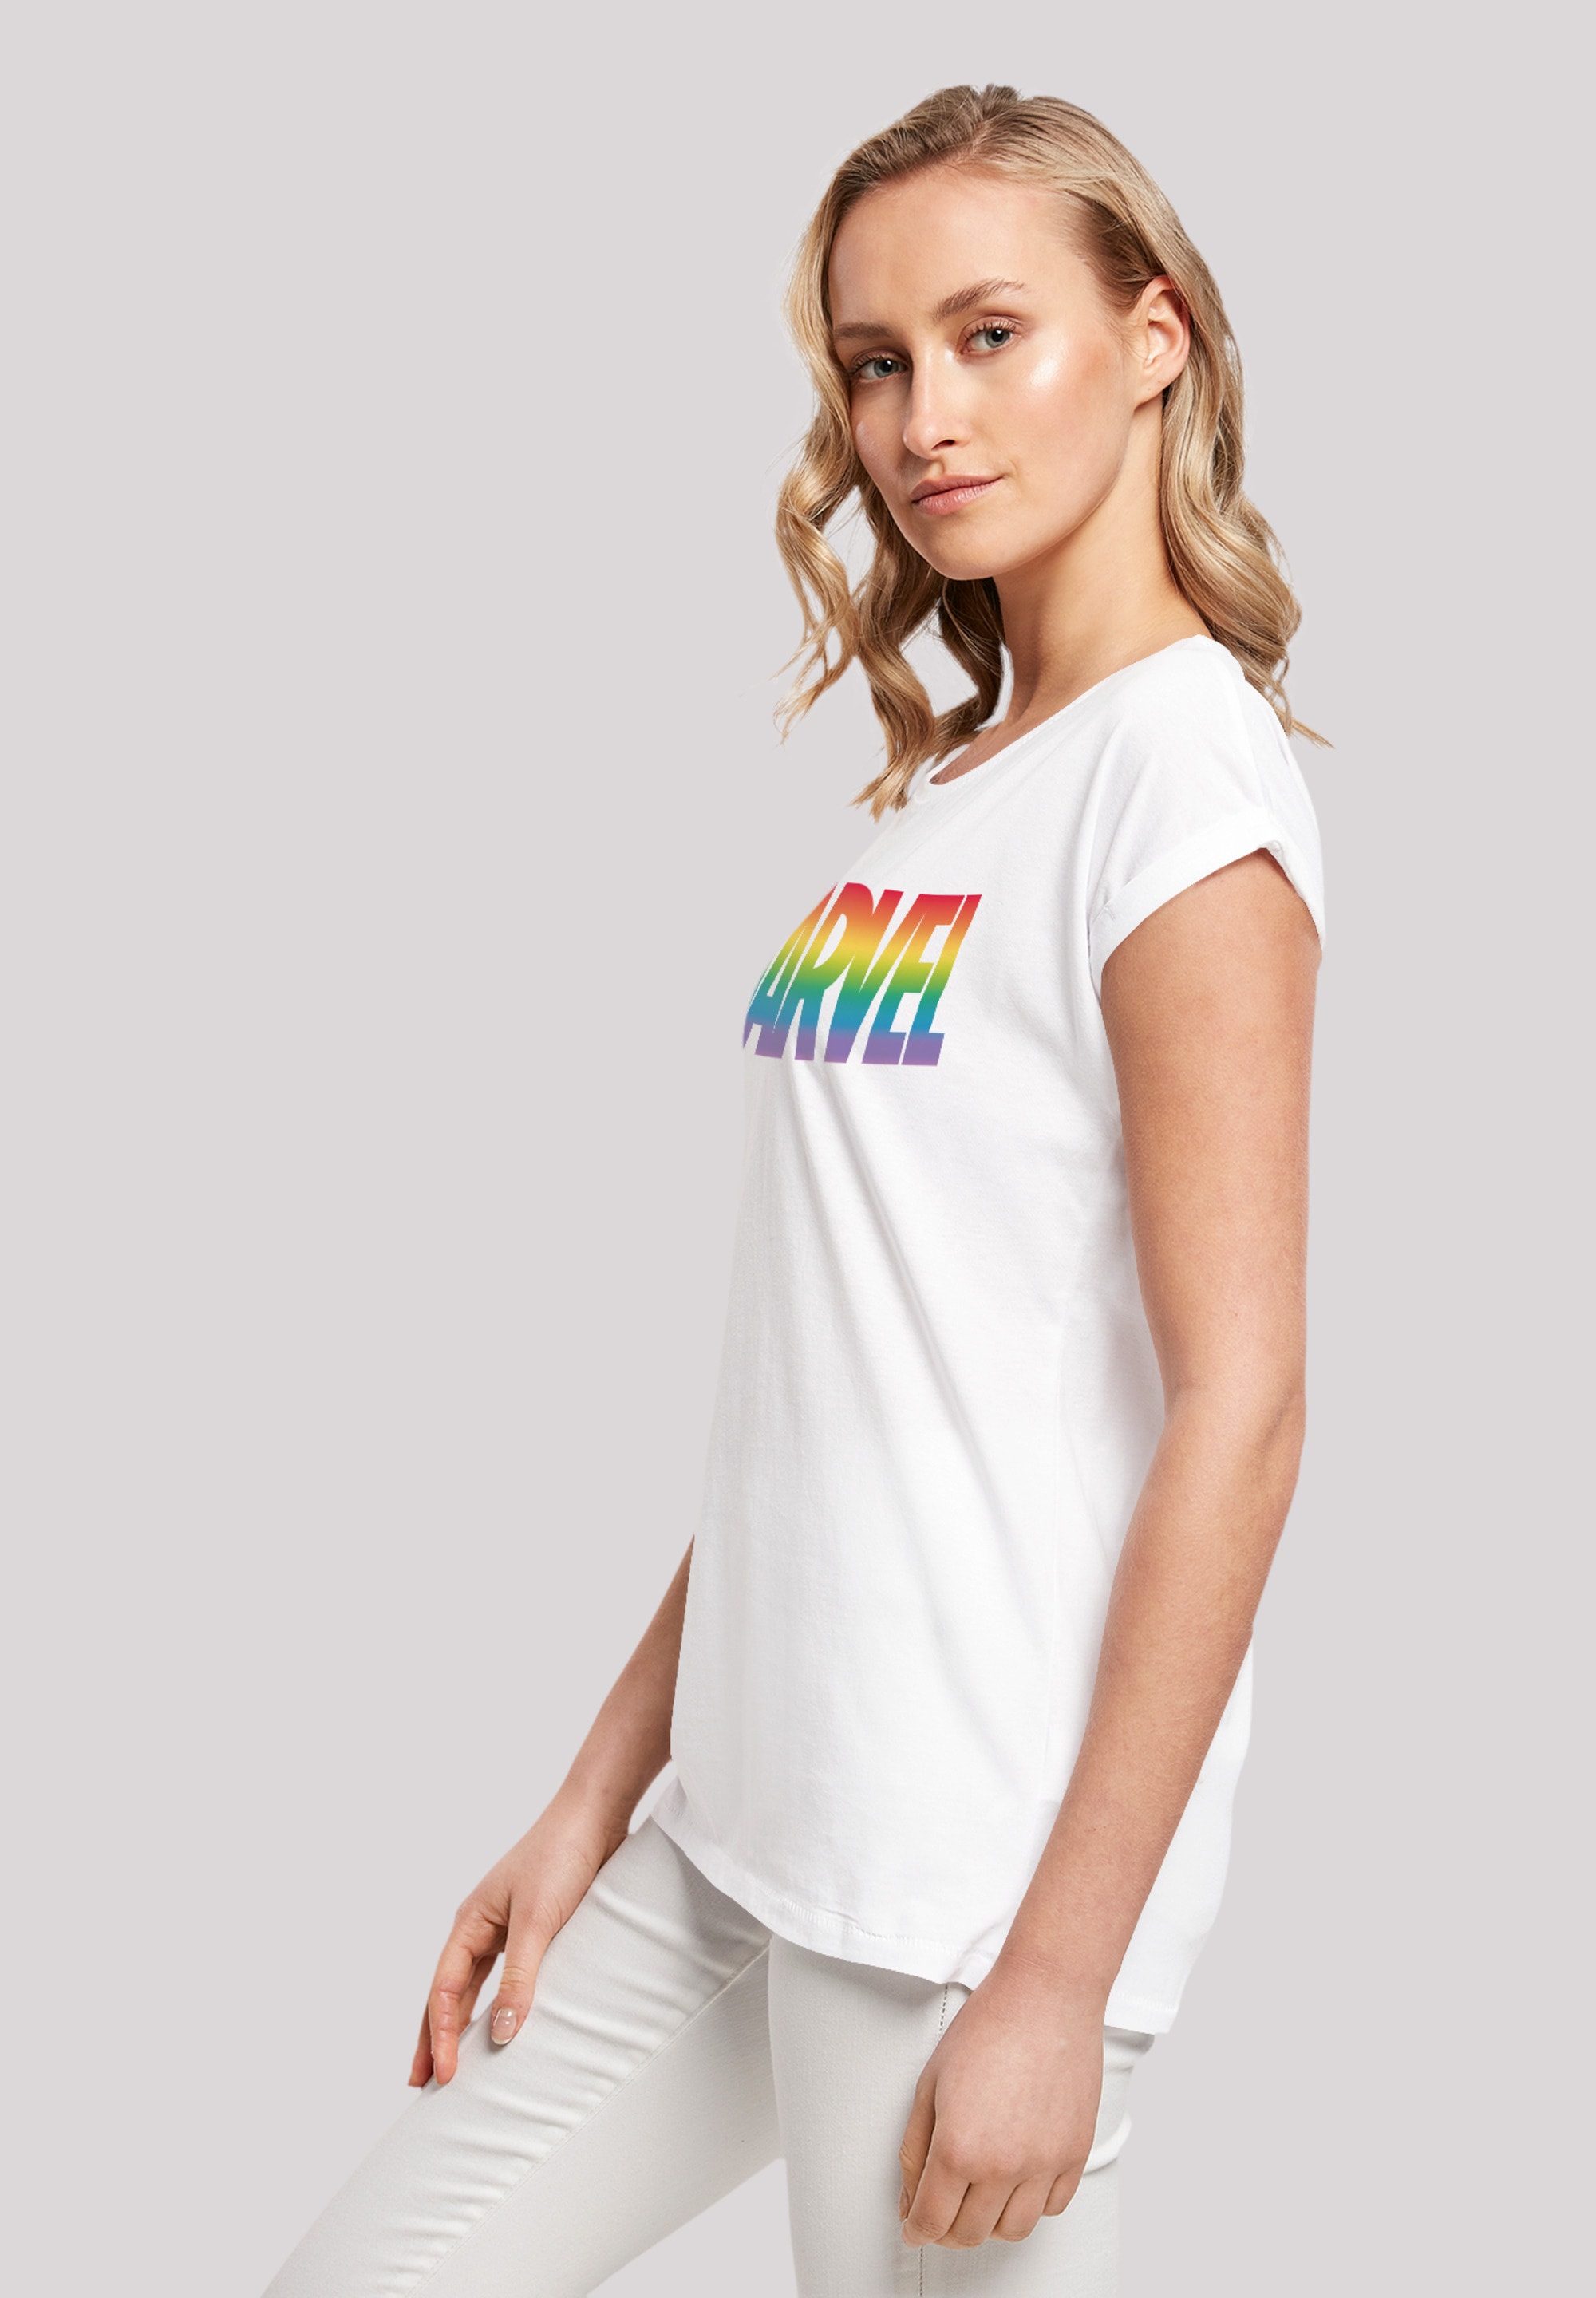 F4NT4STIC T-Shirt »Marvel Pride«, Premium Qualität bestellen | BAUR